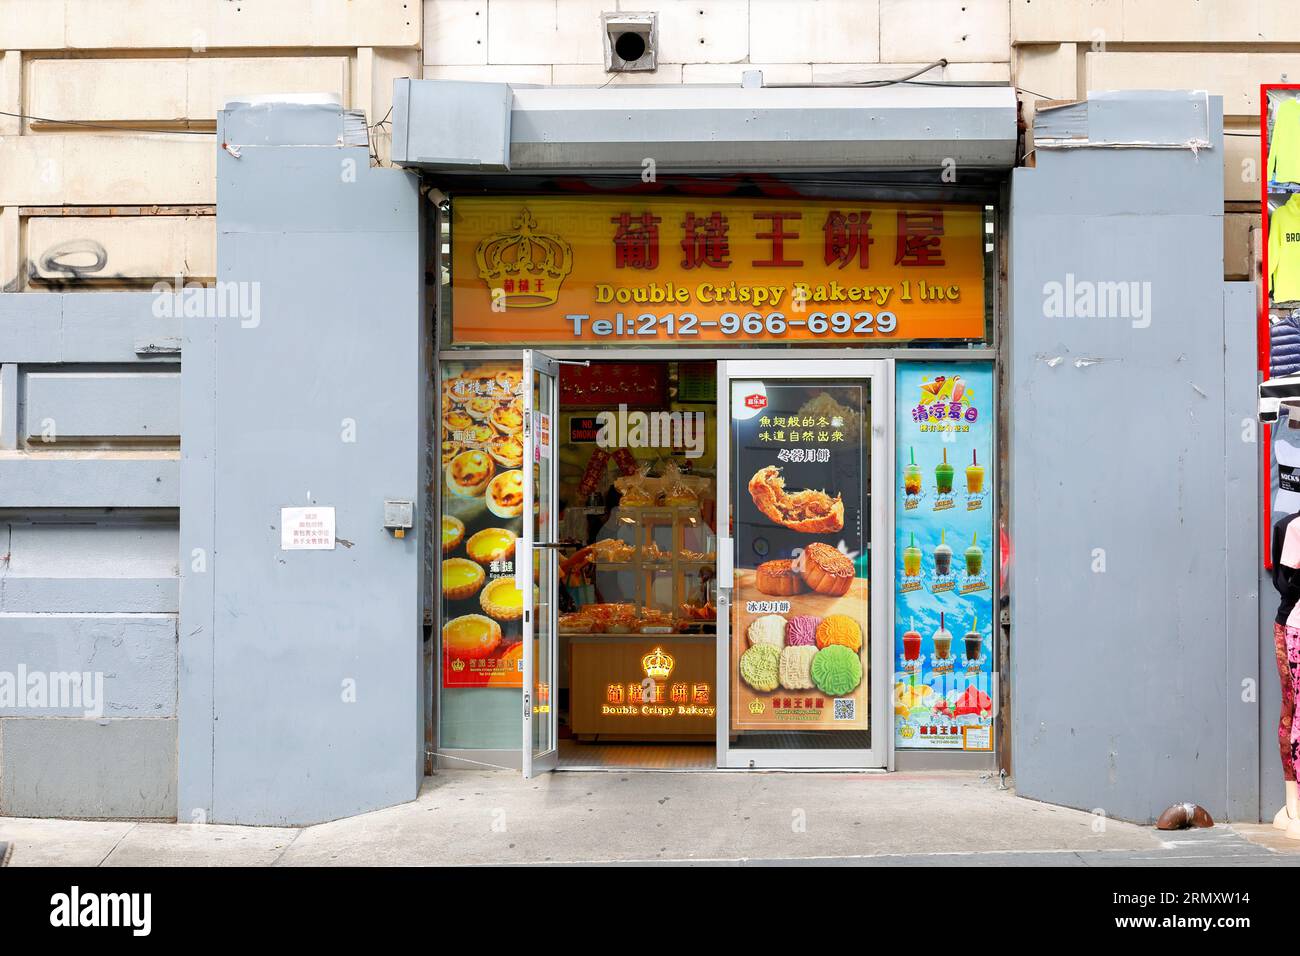 Double Crispy Bakery 葡撻王餅屋, 230 Grand St, New York, NYC, Foto einer chinesischen Bäckerei in Manhattan Chinatown. Stockfoto